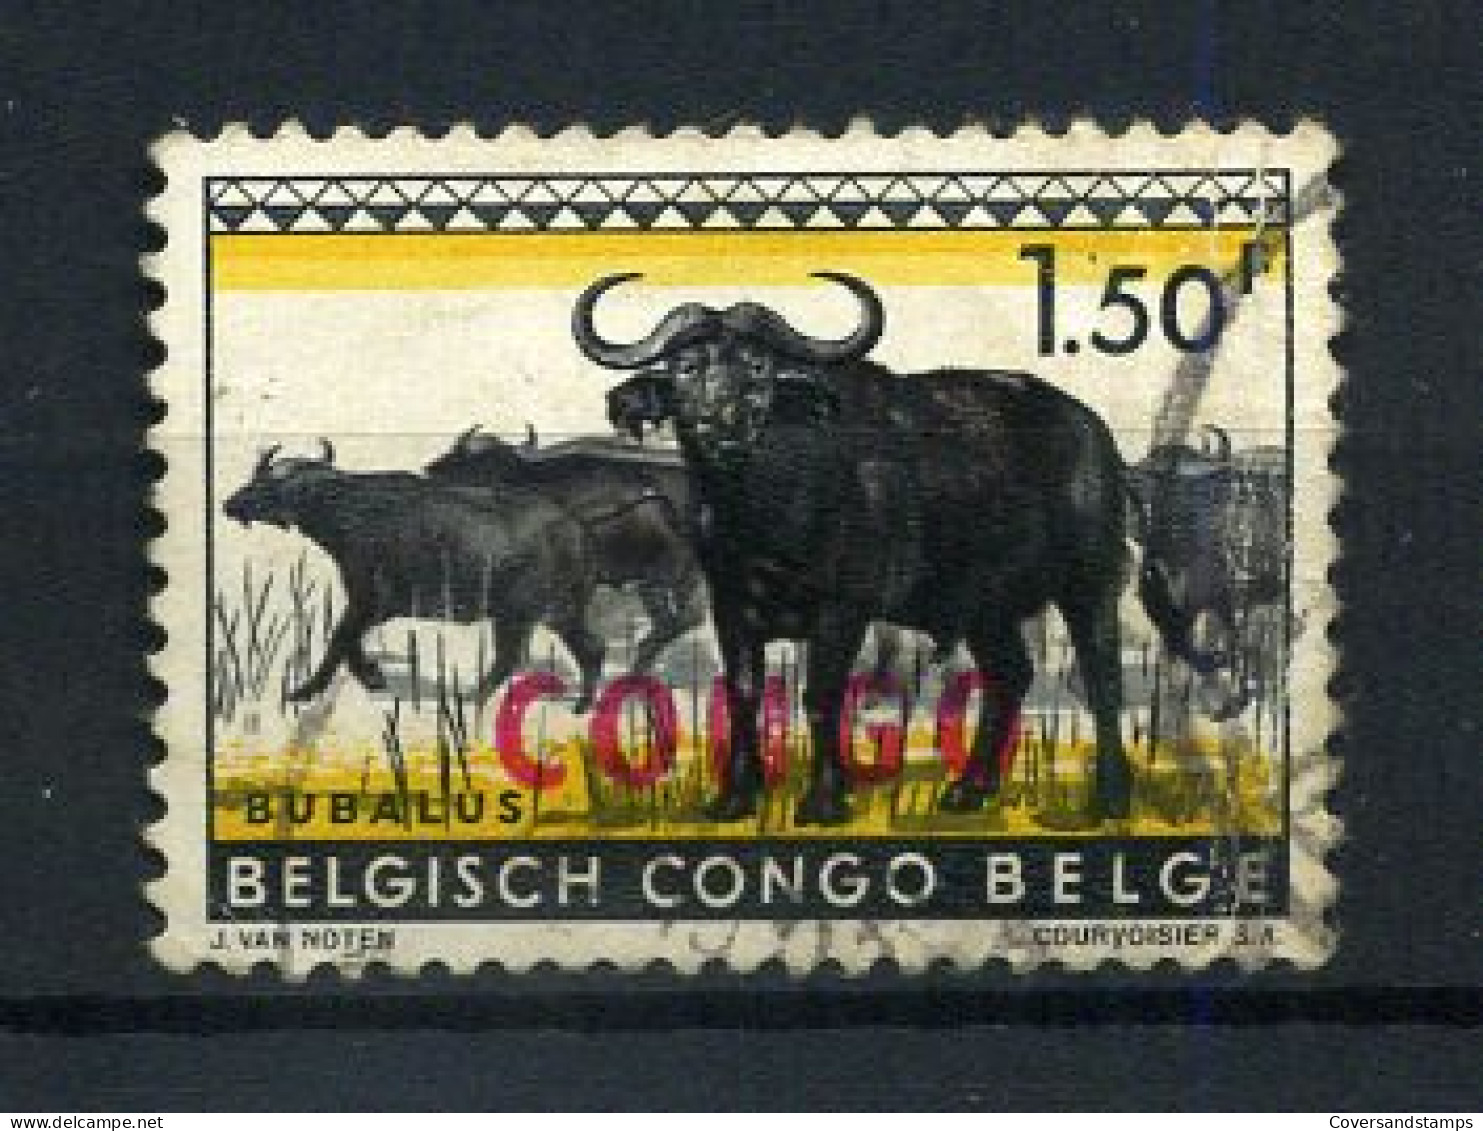 Republiek Congo / République Du Congo 405 - Gest / Obl / Used - Usados